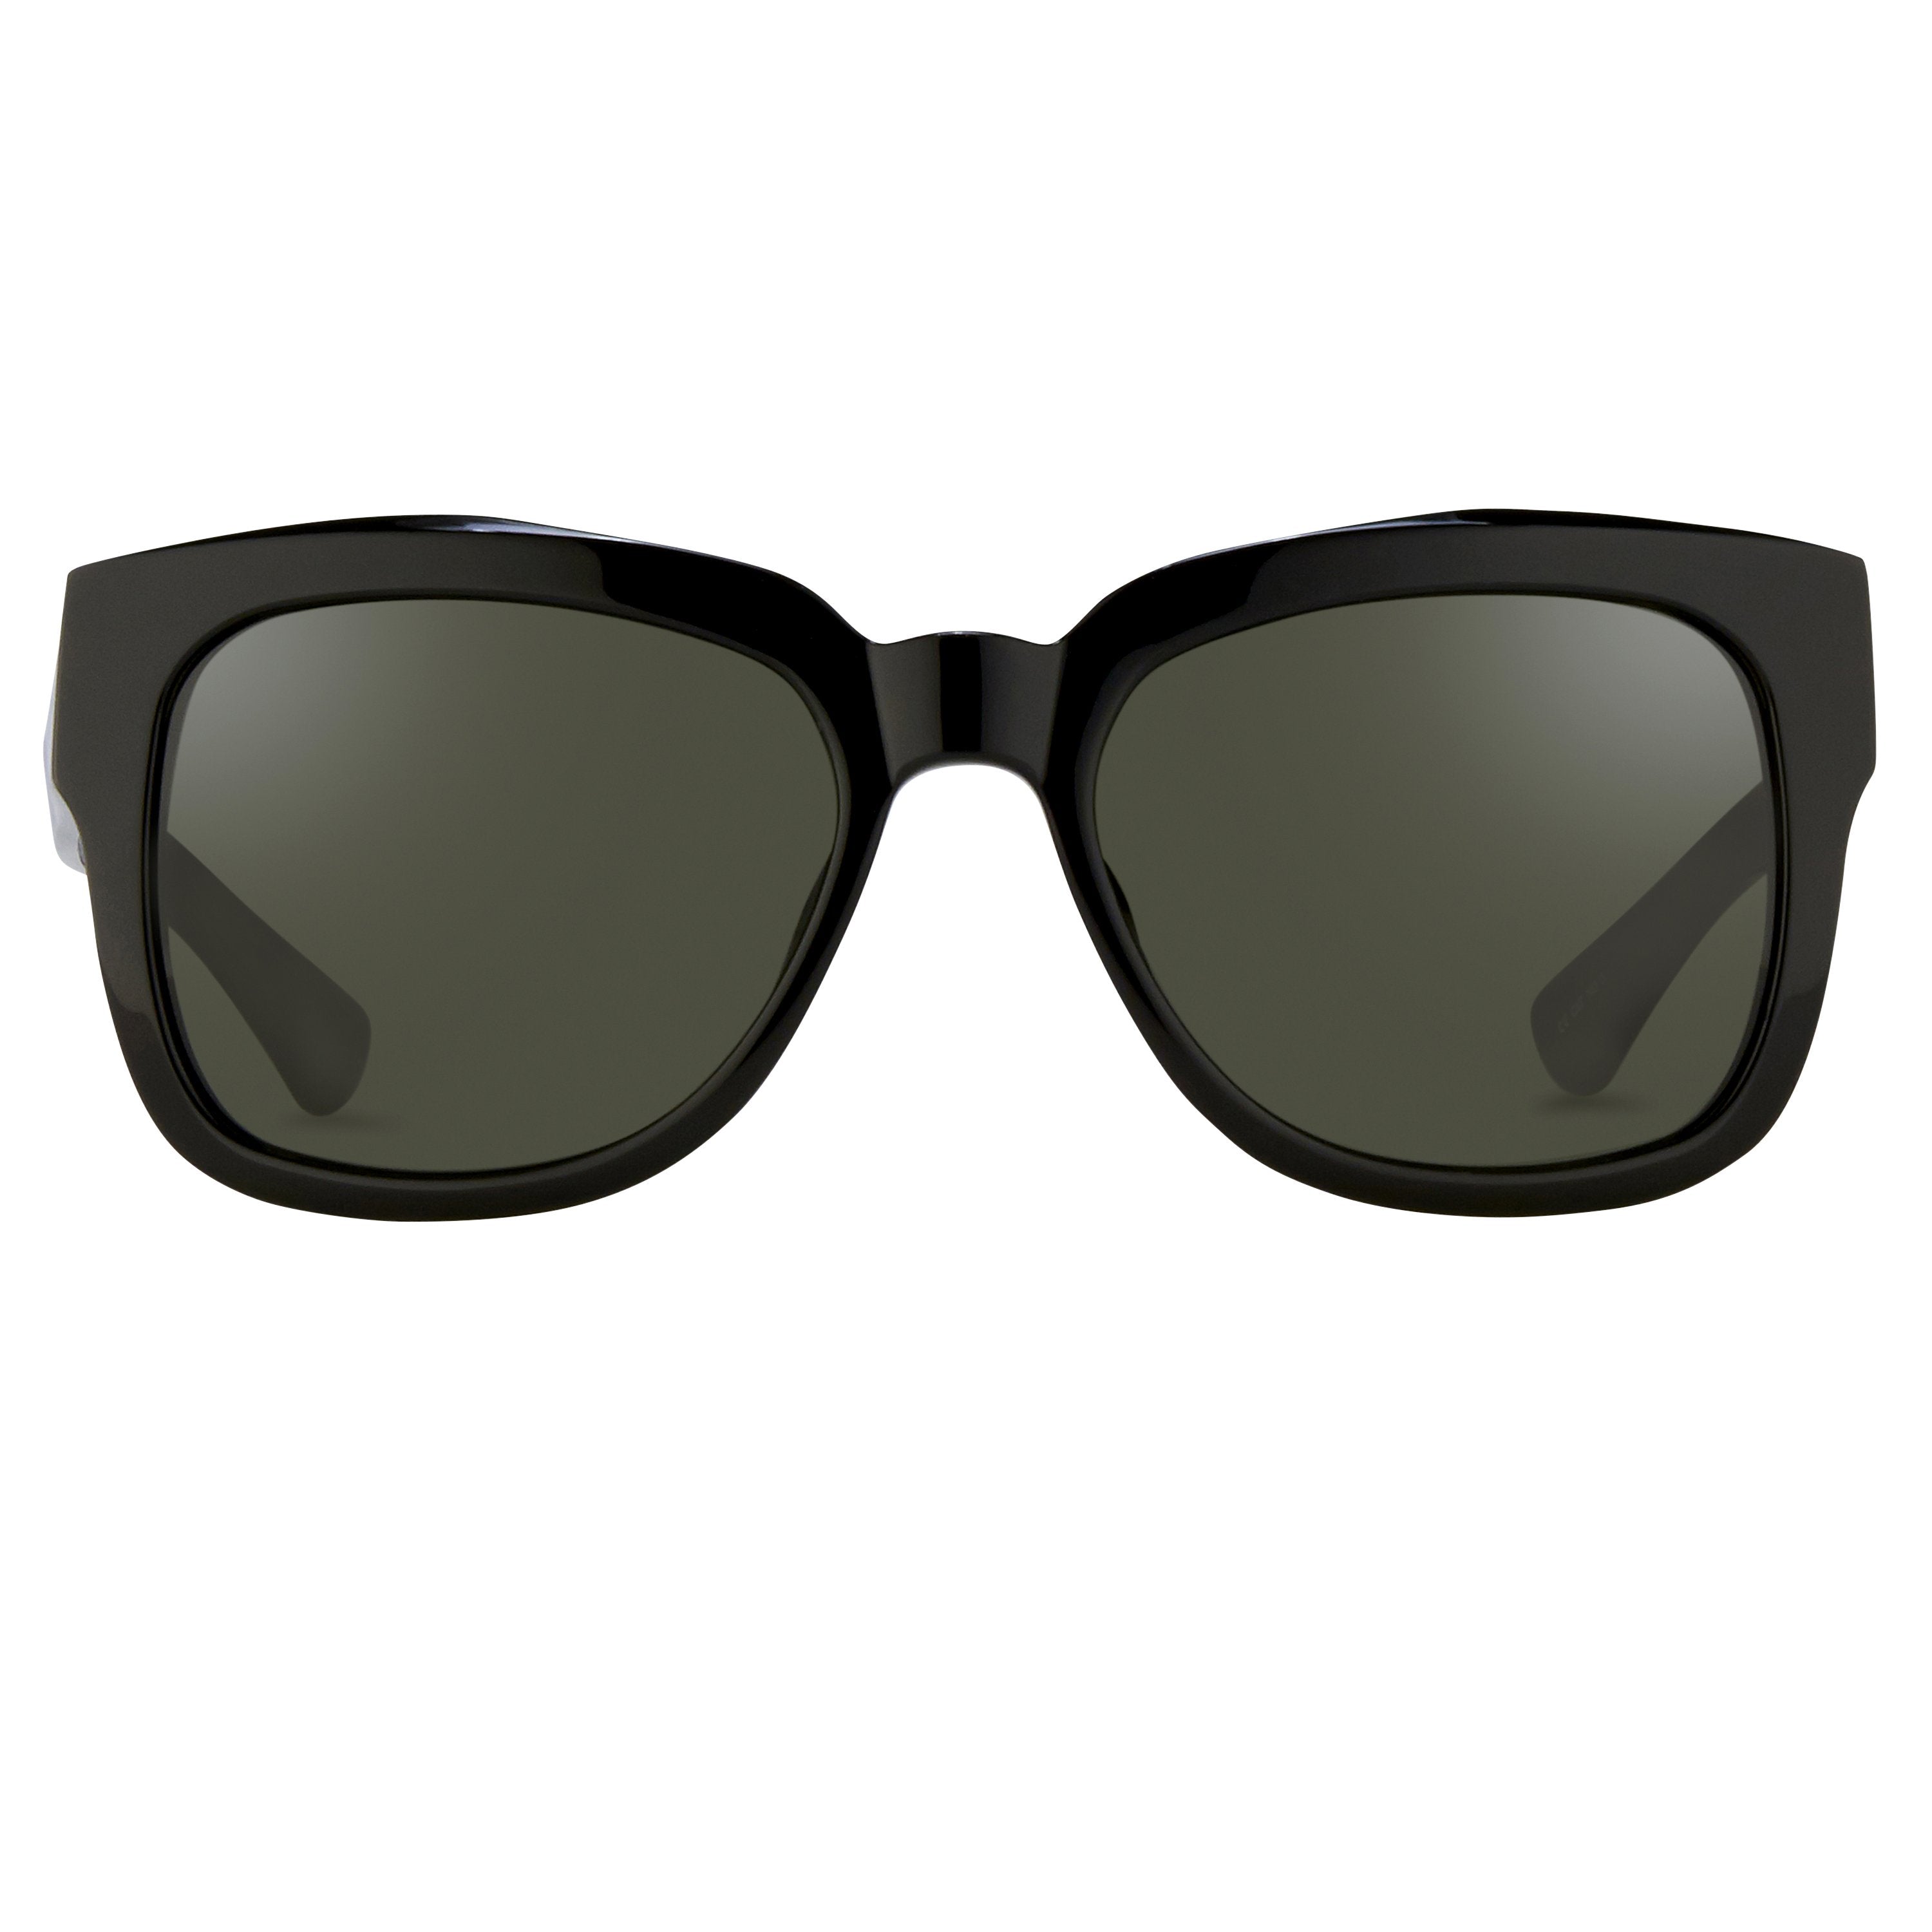 Dries van Noten 84 C12 D-Frame Sunglasses – LINDA FARROW (INT'L)